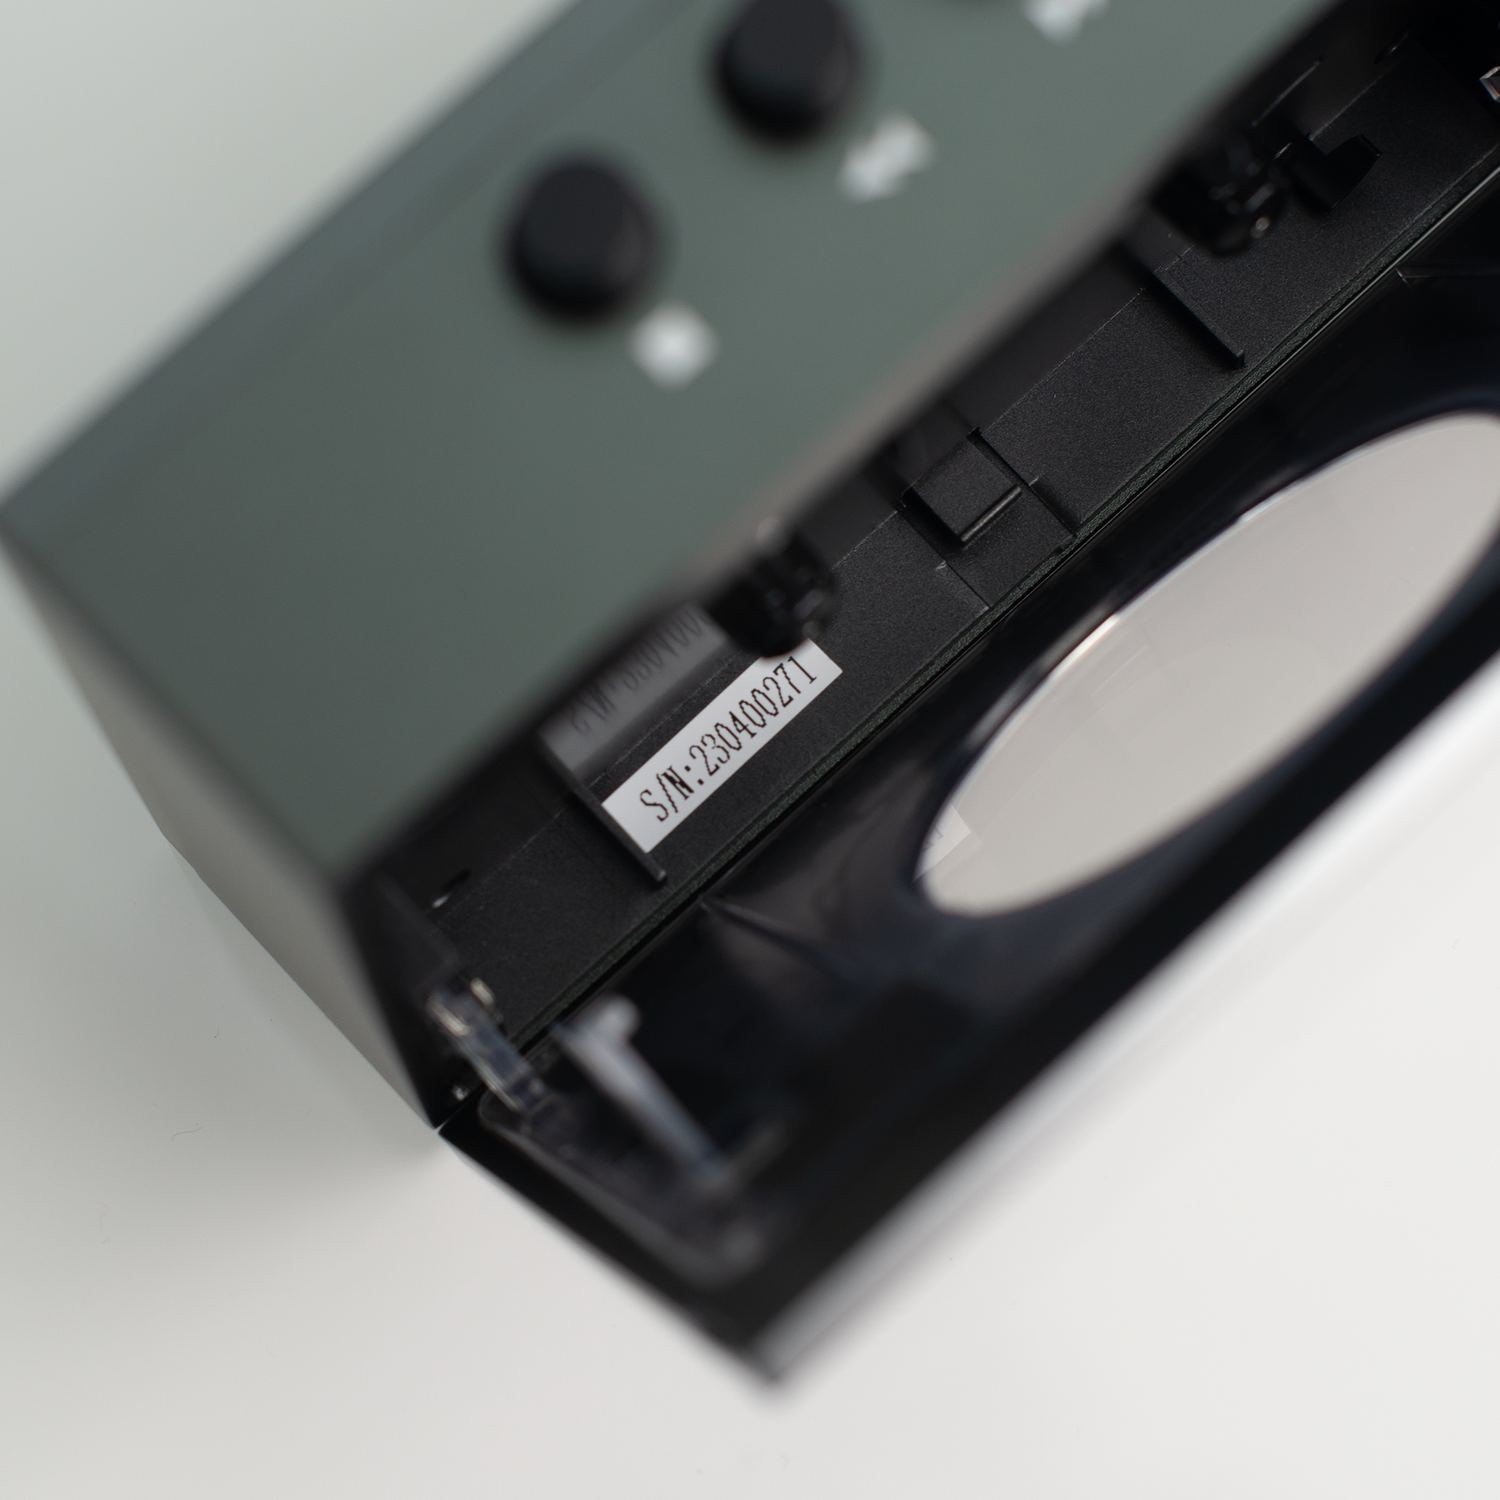 DEMO UNIT -- We Are Rewind Portable Cassette Player - Black Colour